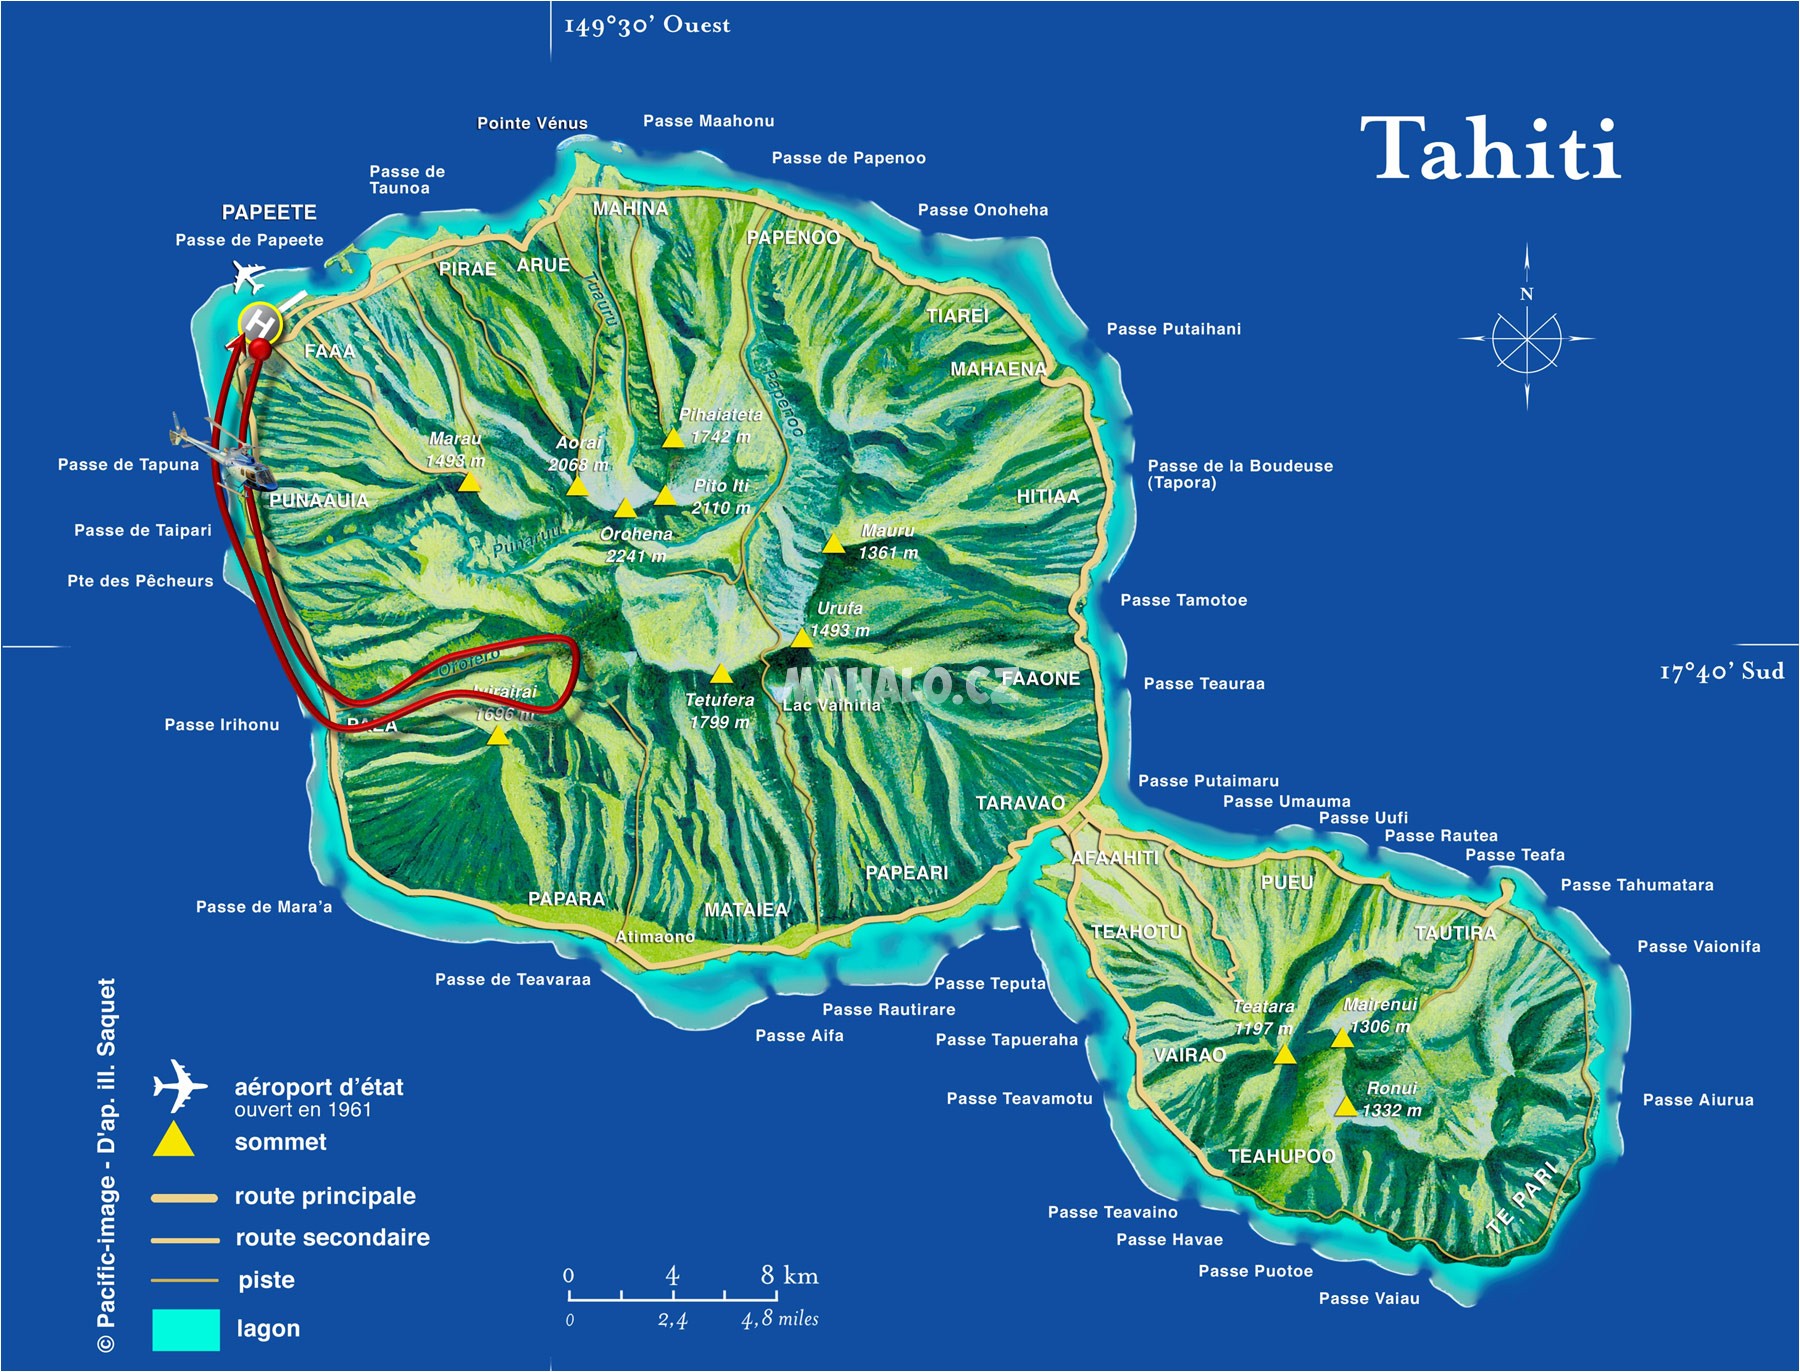 tahiti mapa sveta Stahujte materiály z Francouzské Polynésie | Francouzská Polynésie  tahiti mapa sveta